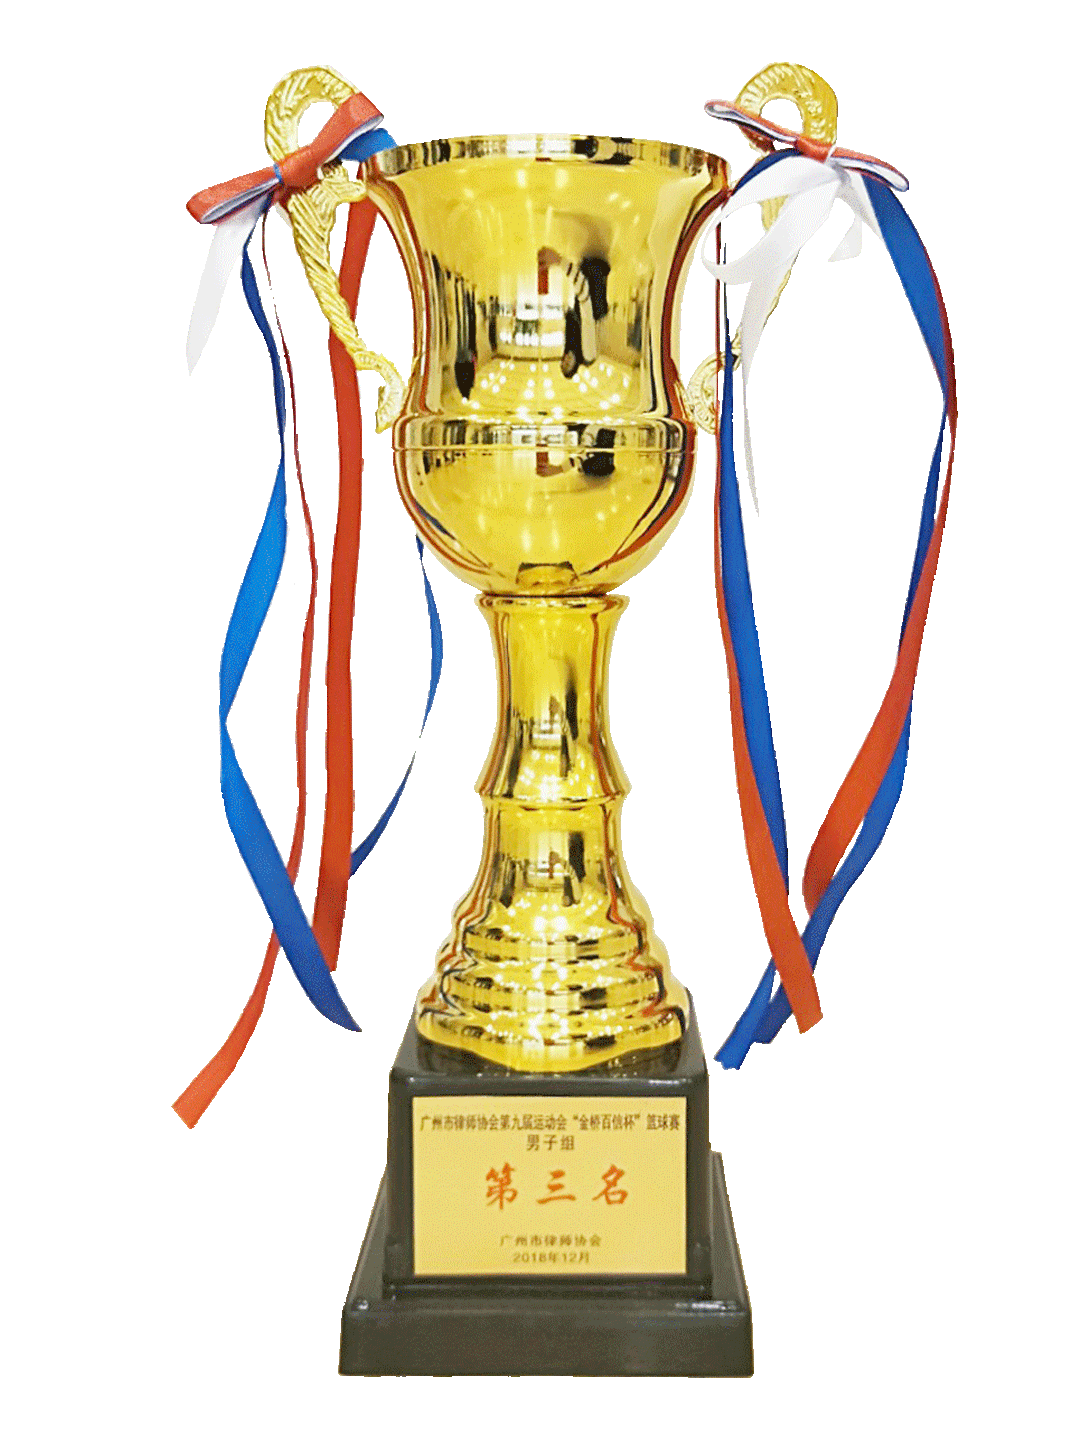 广州市律师协会第九届运动会“金桥百信杯”篮球赛男子组第三名